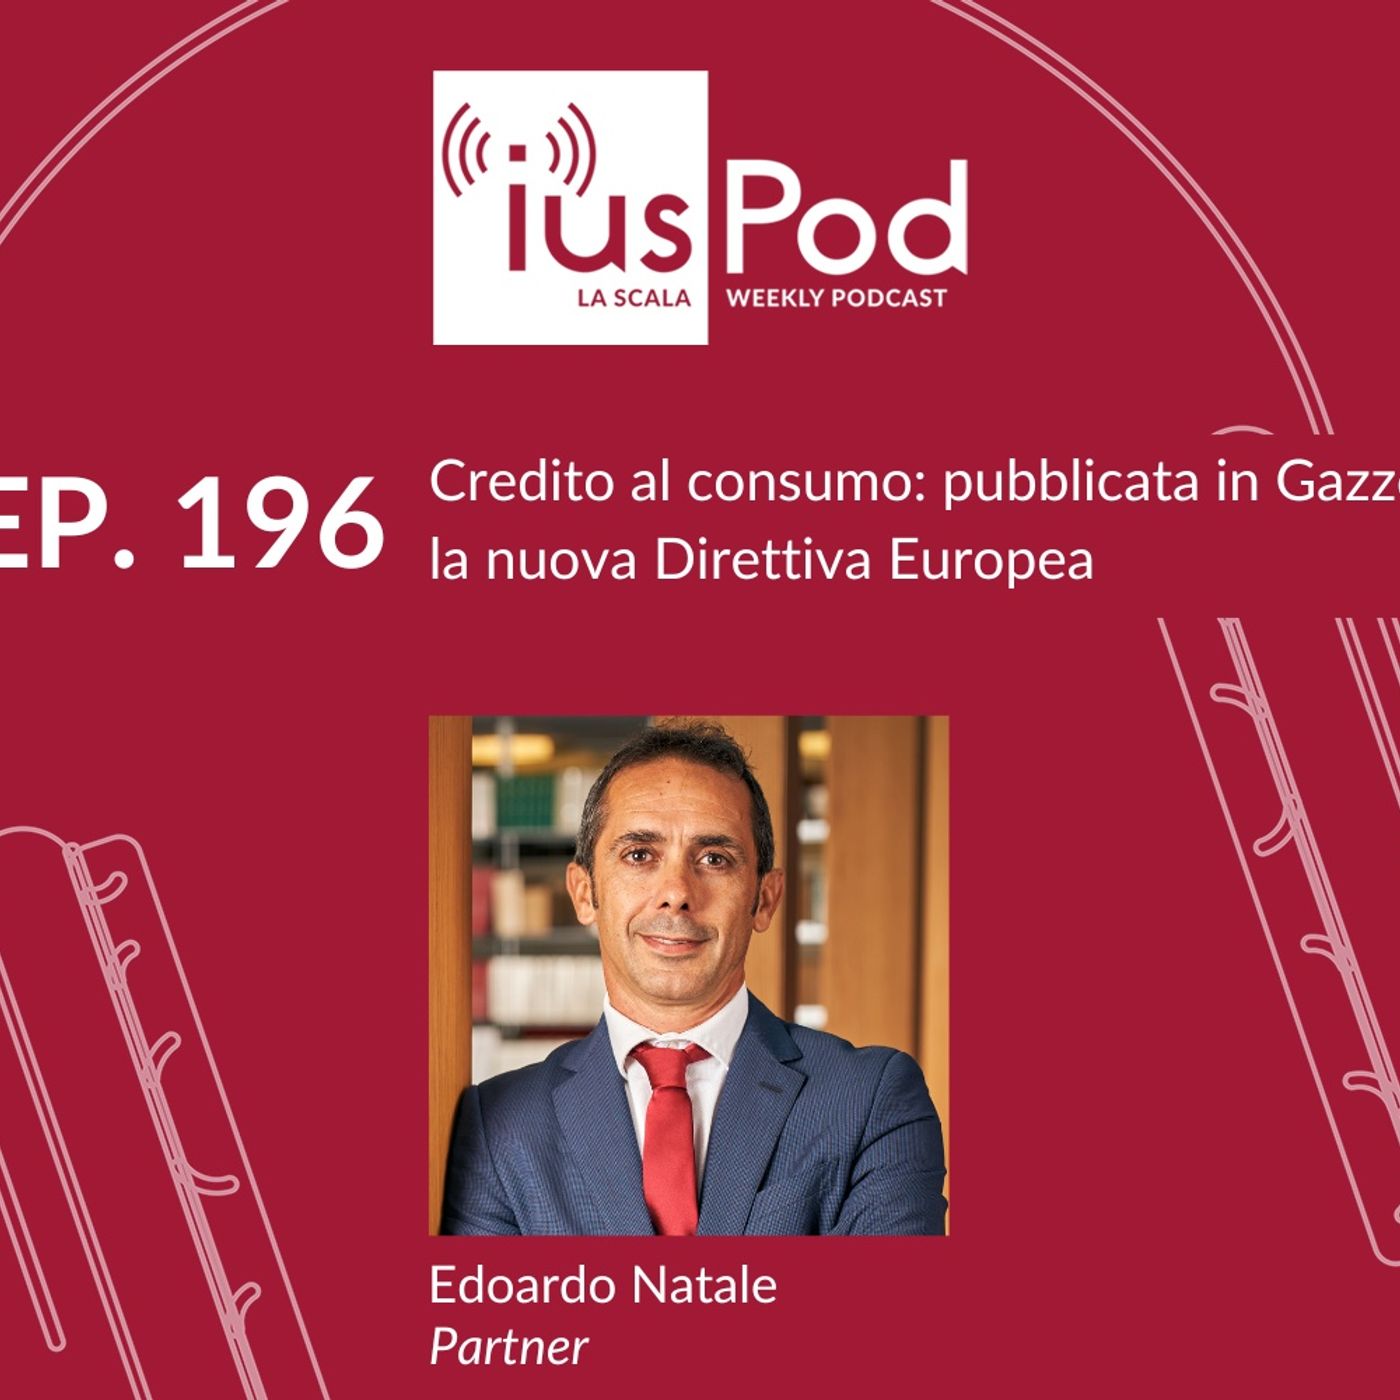 EP. 196 - Credito al consumo: pubblicata in Gazzetta la nuova Direttiva Europea